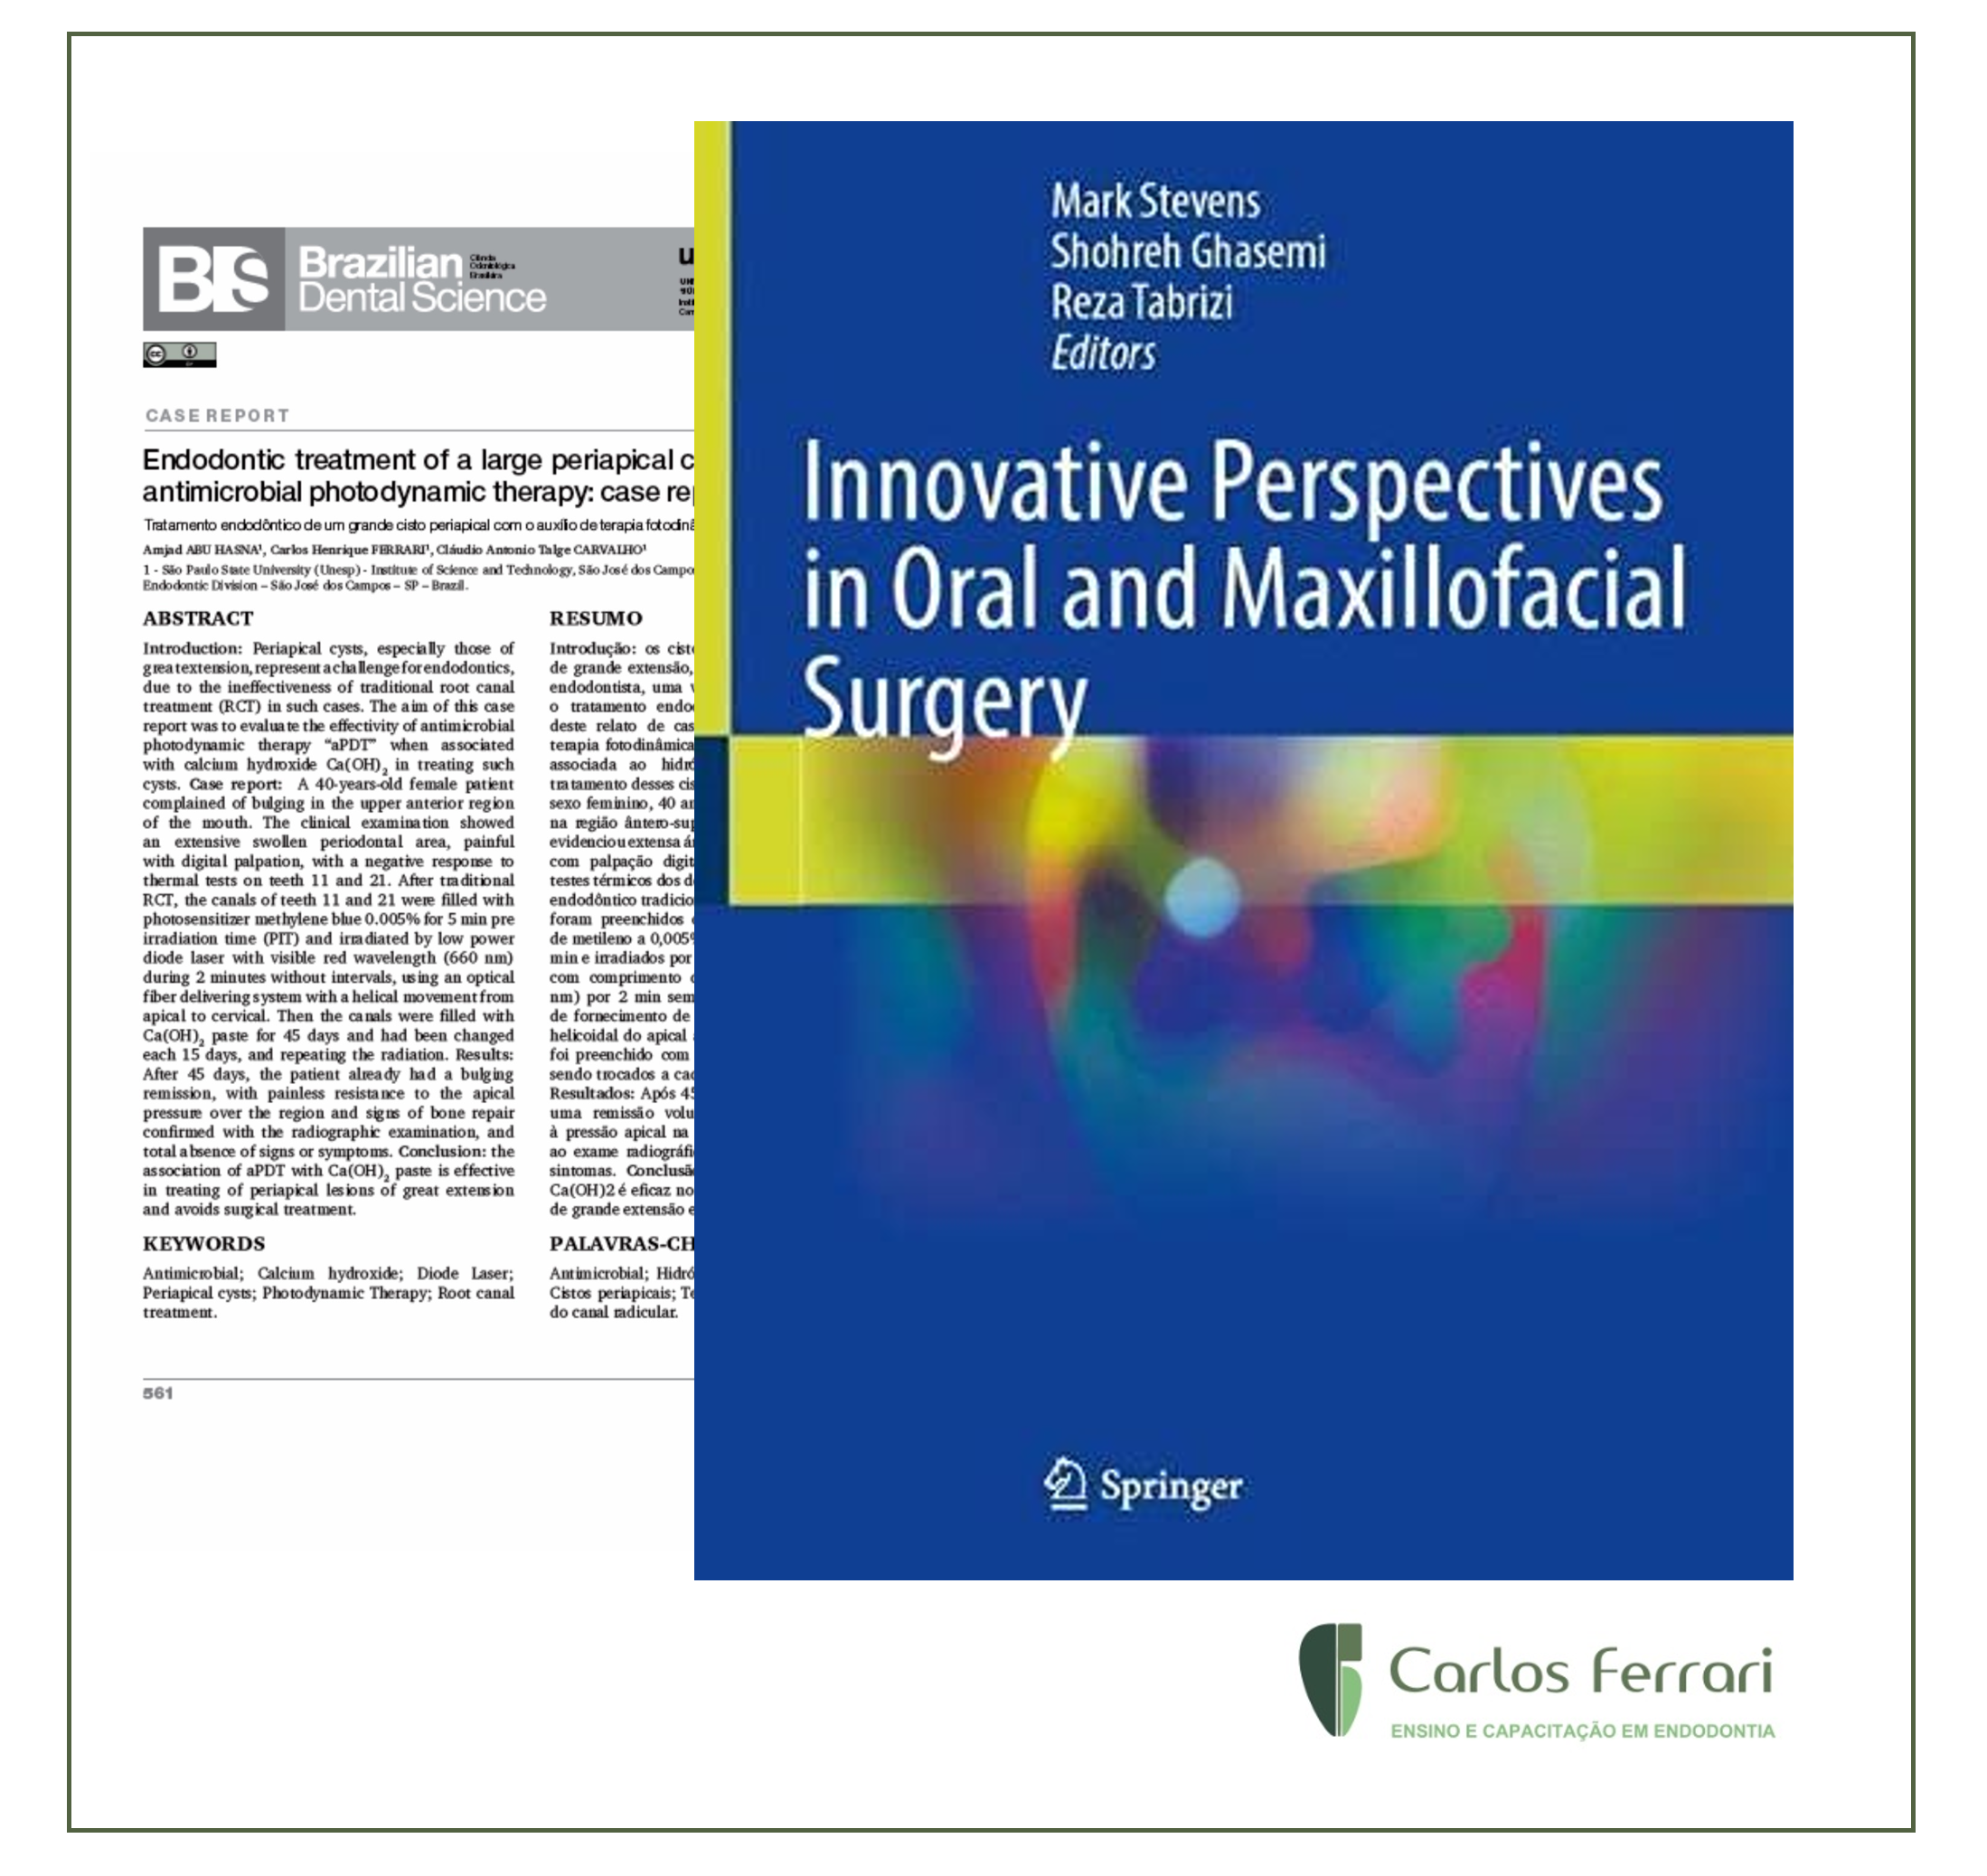 You are currently viewing Artigo citado no livro “Innovative Perspectives in Oral and Maxillofacial Surgery”